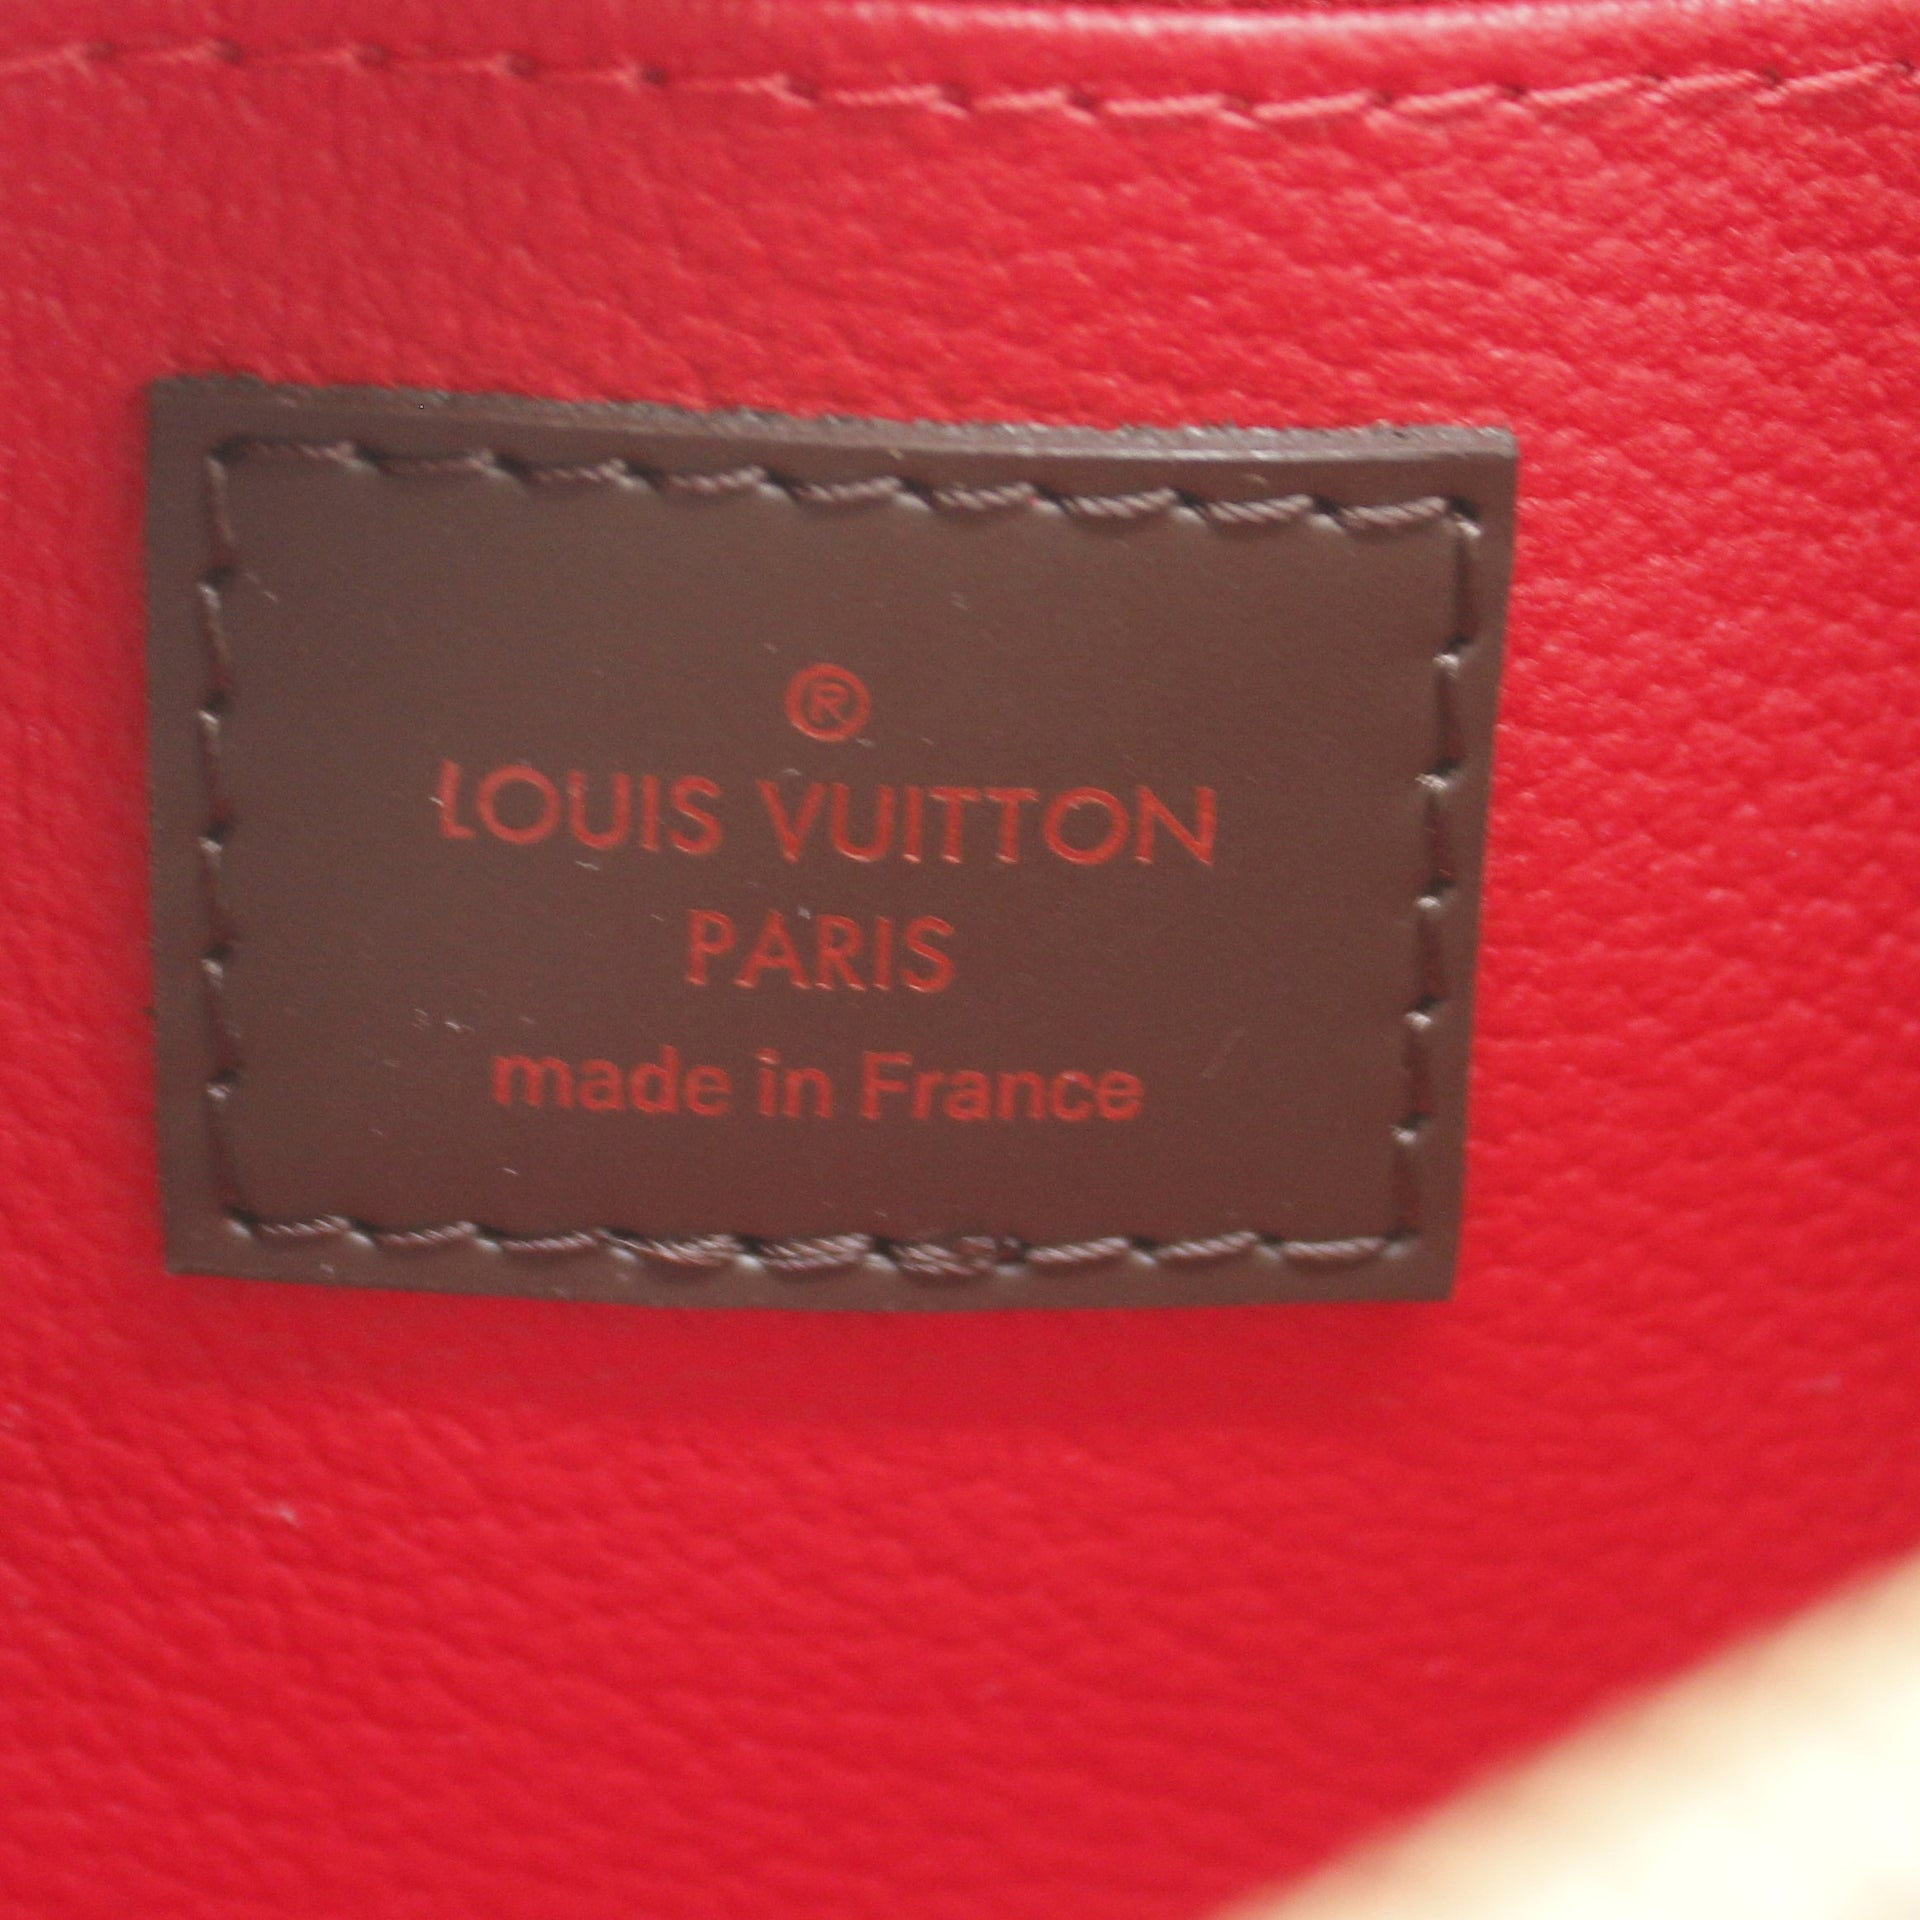 Louis Vuitton Damier Ebene Canvas Cosmetic Pouch, myGemma, AU